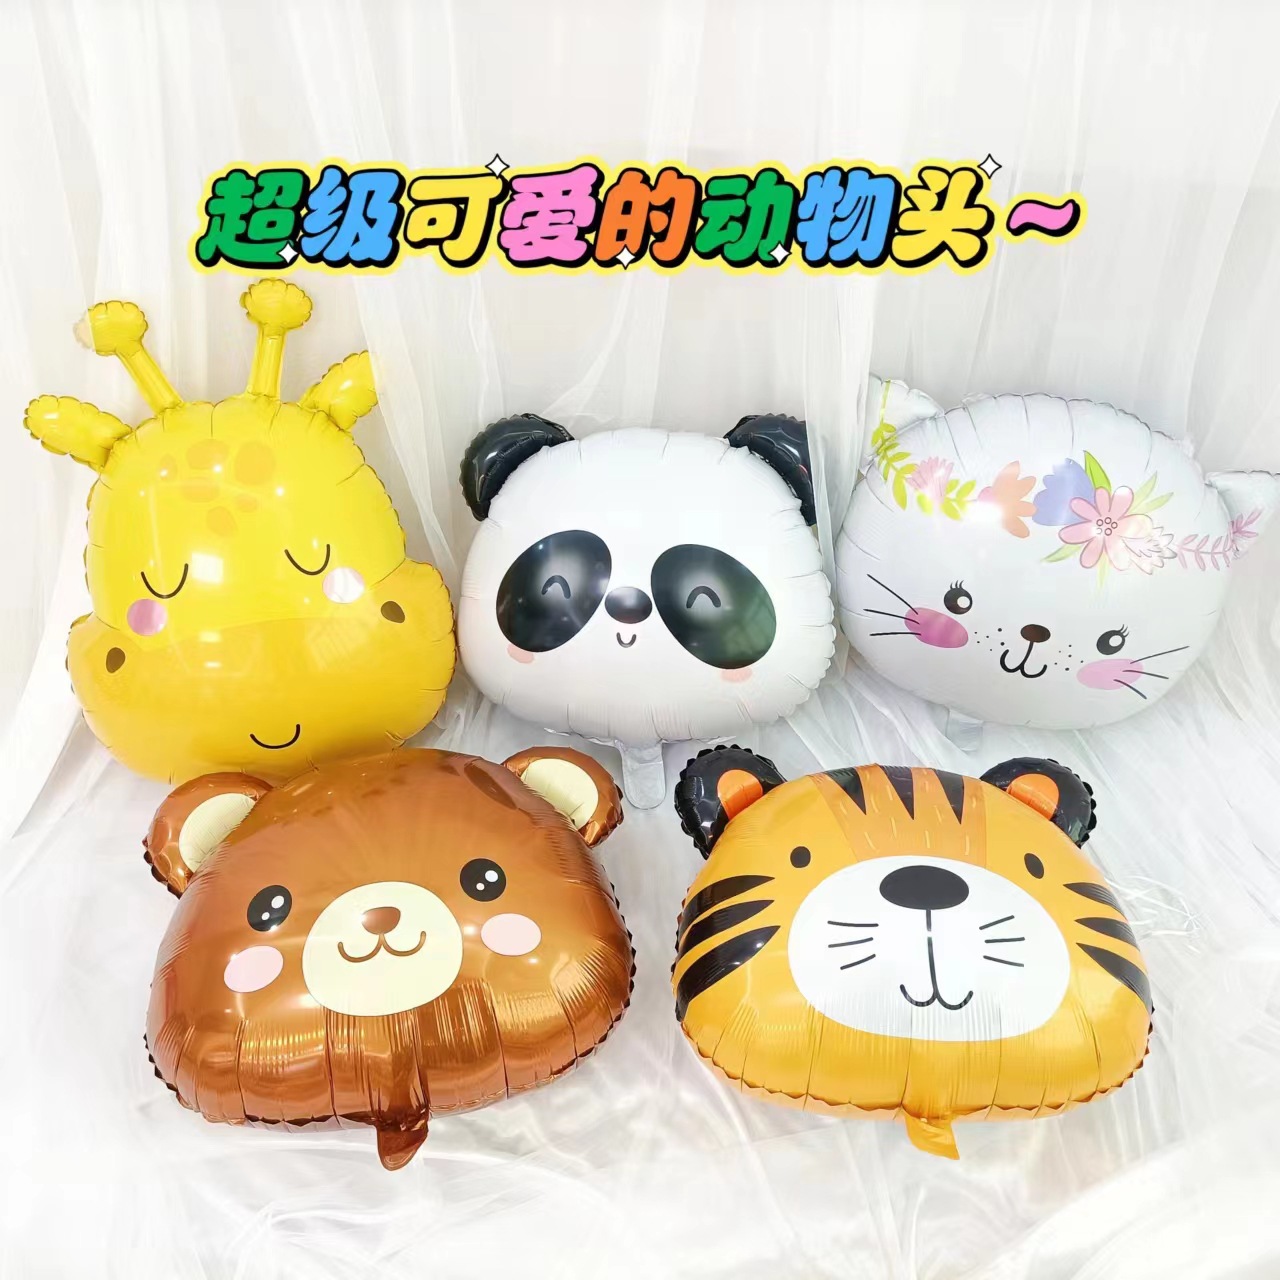 卡通动物铝膜气球狮子老虎熊幼儿园儿童宝宝周岁生日派对装饰玩具